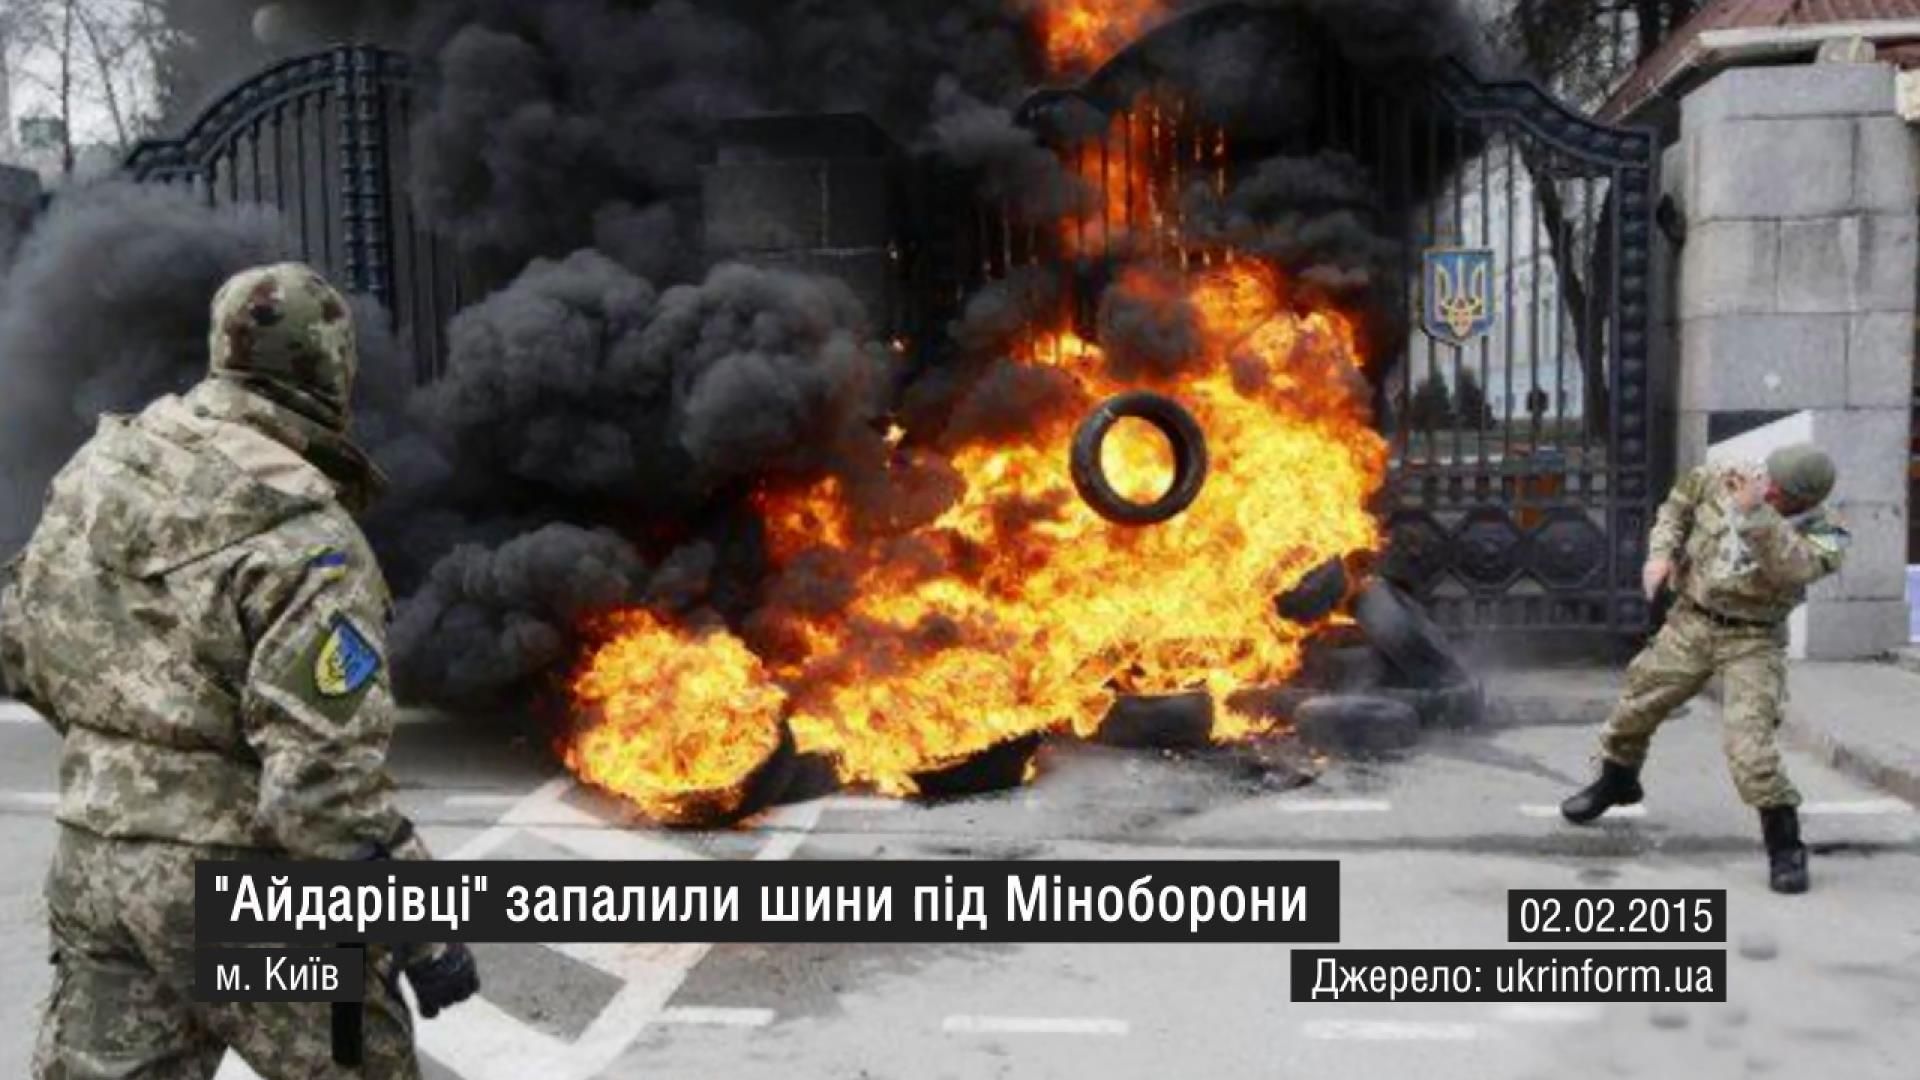 Самые актуальные кадры 2 февраля. Почтение памяти Кузьмы, бунт "айдаровцев"